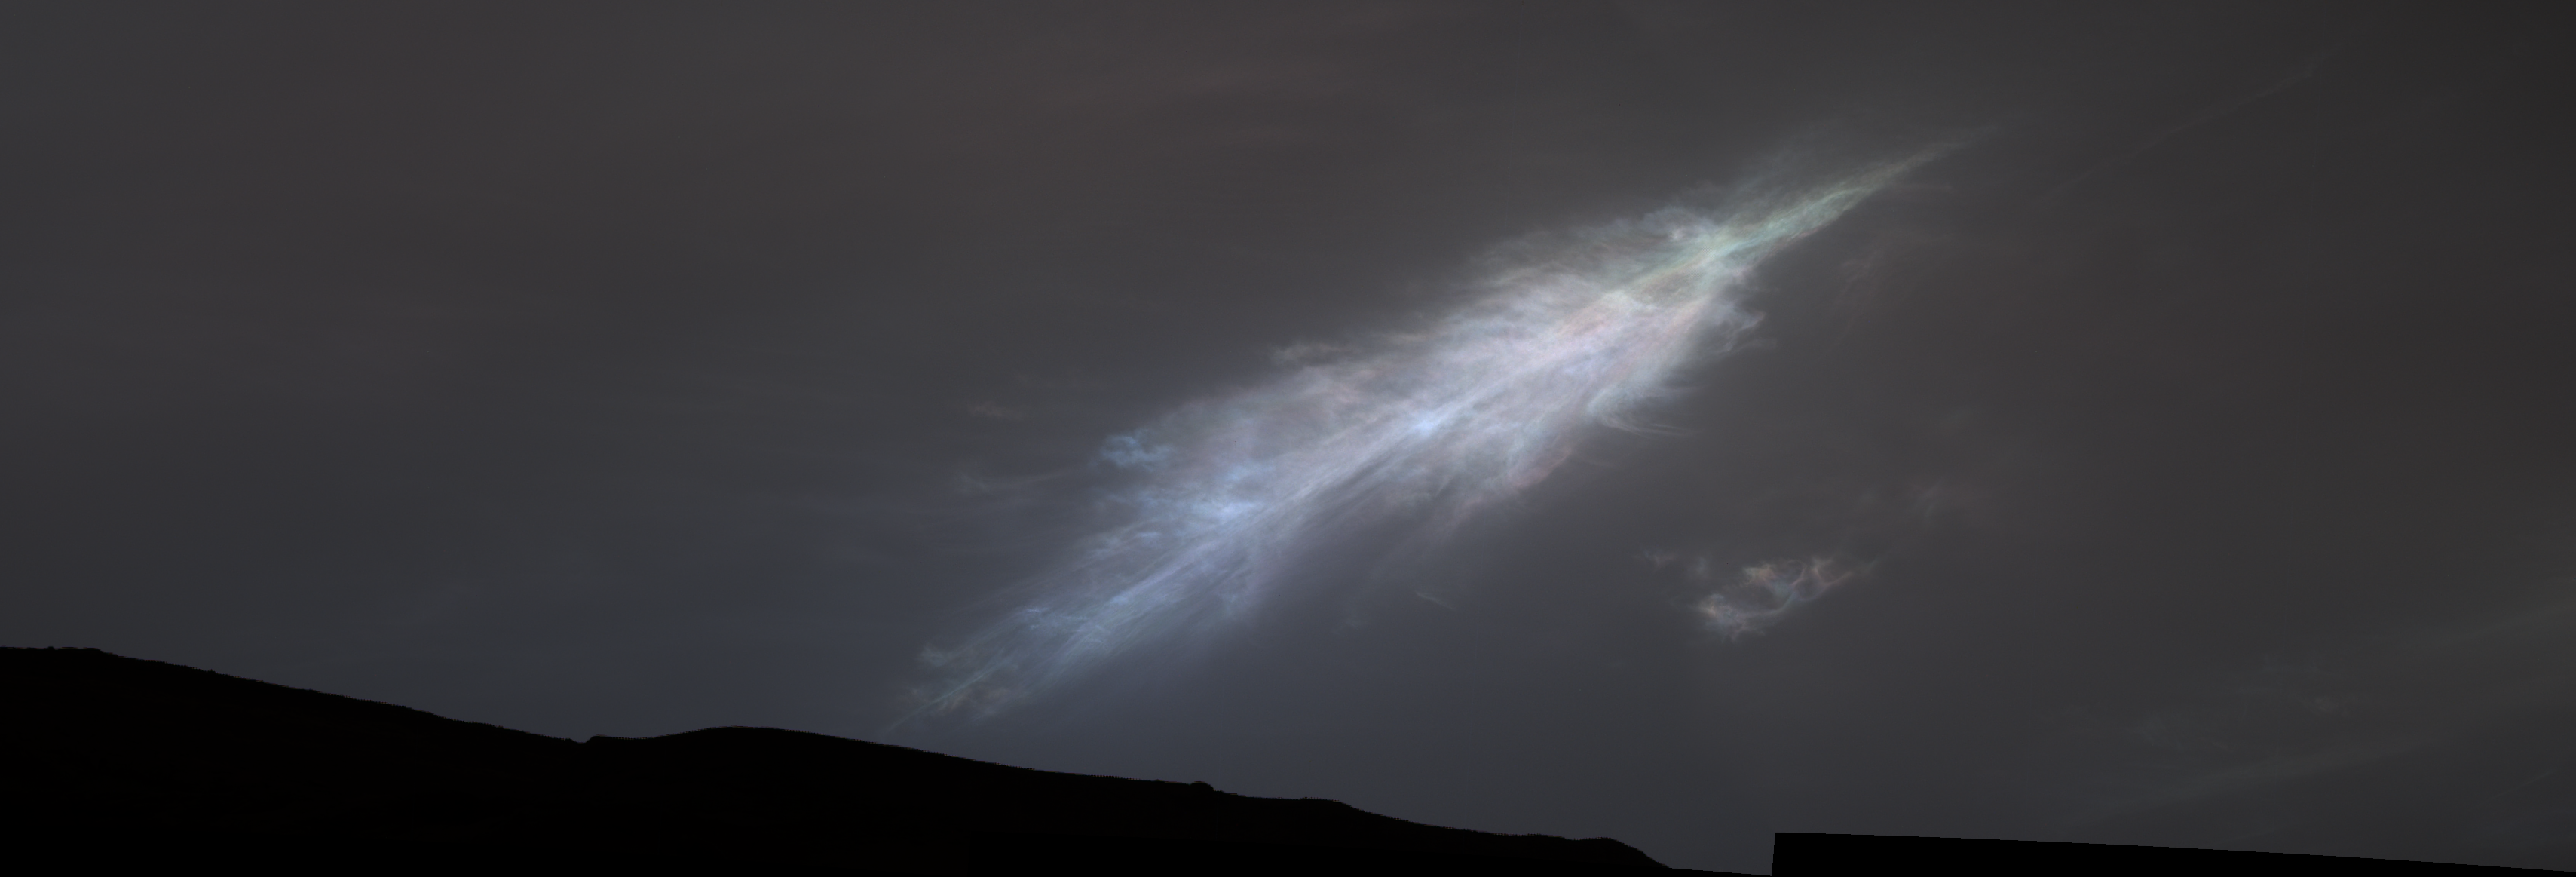 Eine regenbogenfarbige Wolke in Form einer Feder am Himmel über dem Mars.